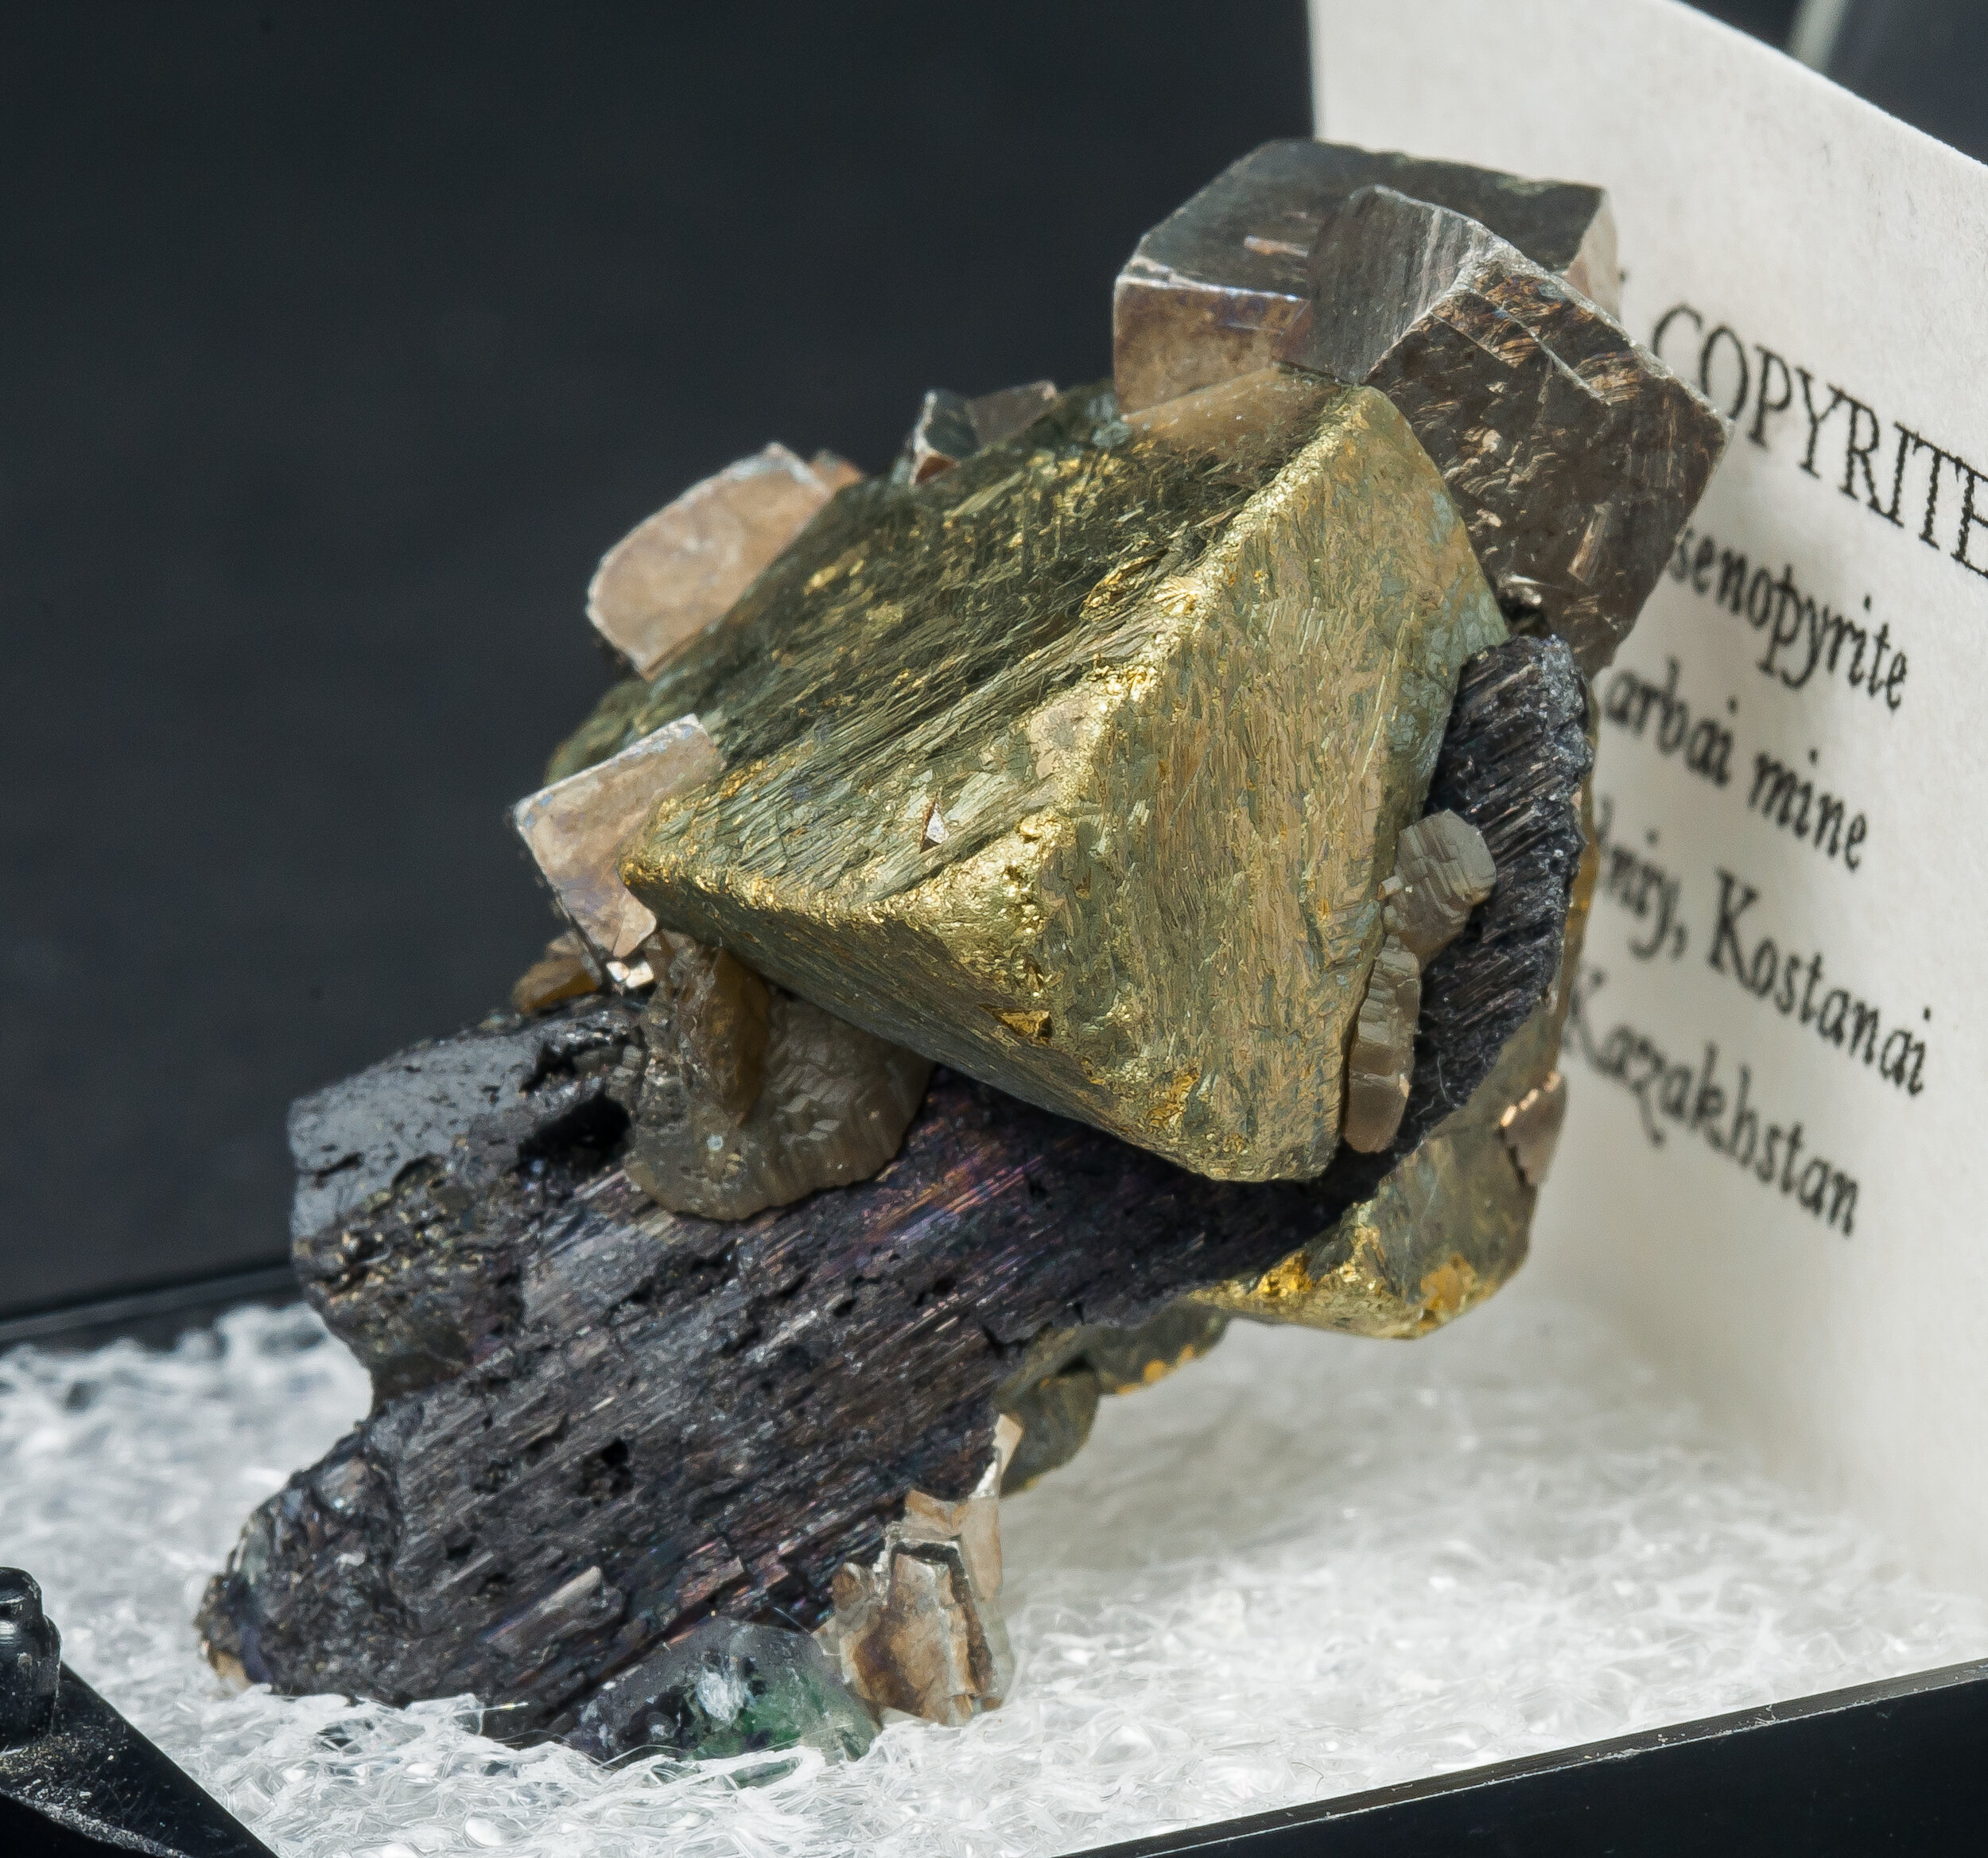 specimens/s_imagesAO1/Chalcopyrite-TAM16AO1s.jpg